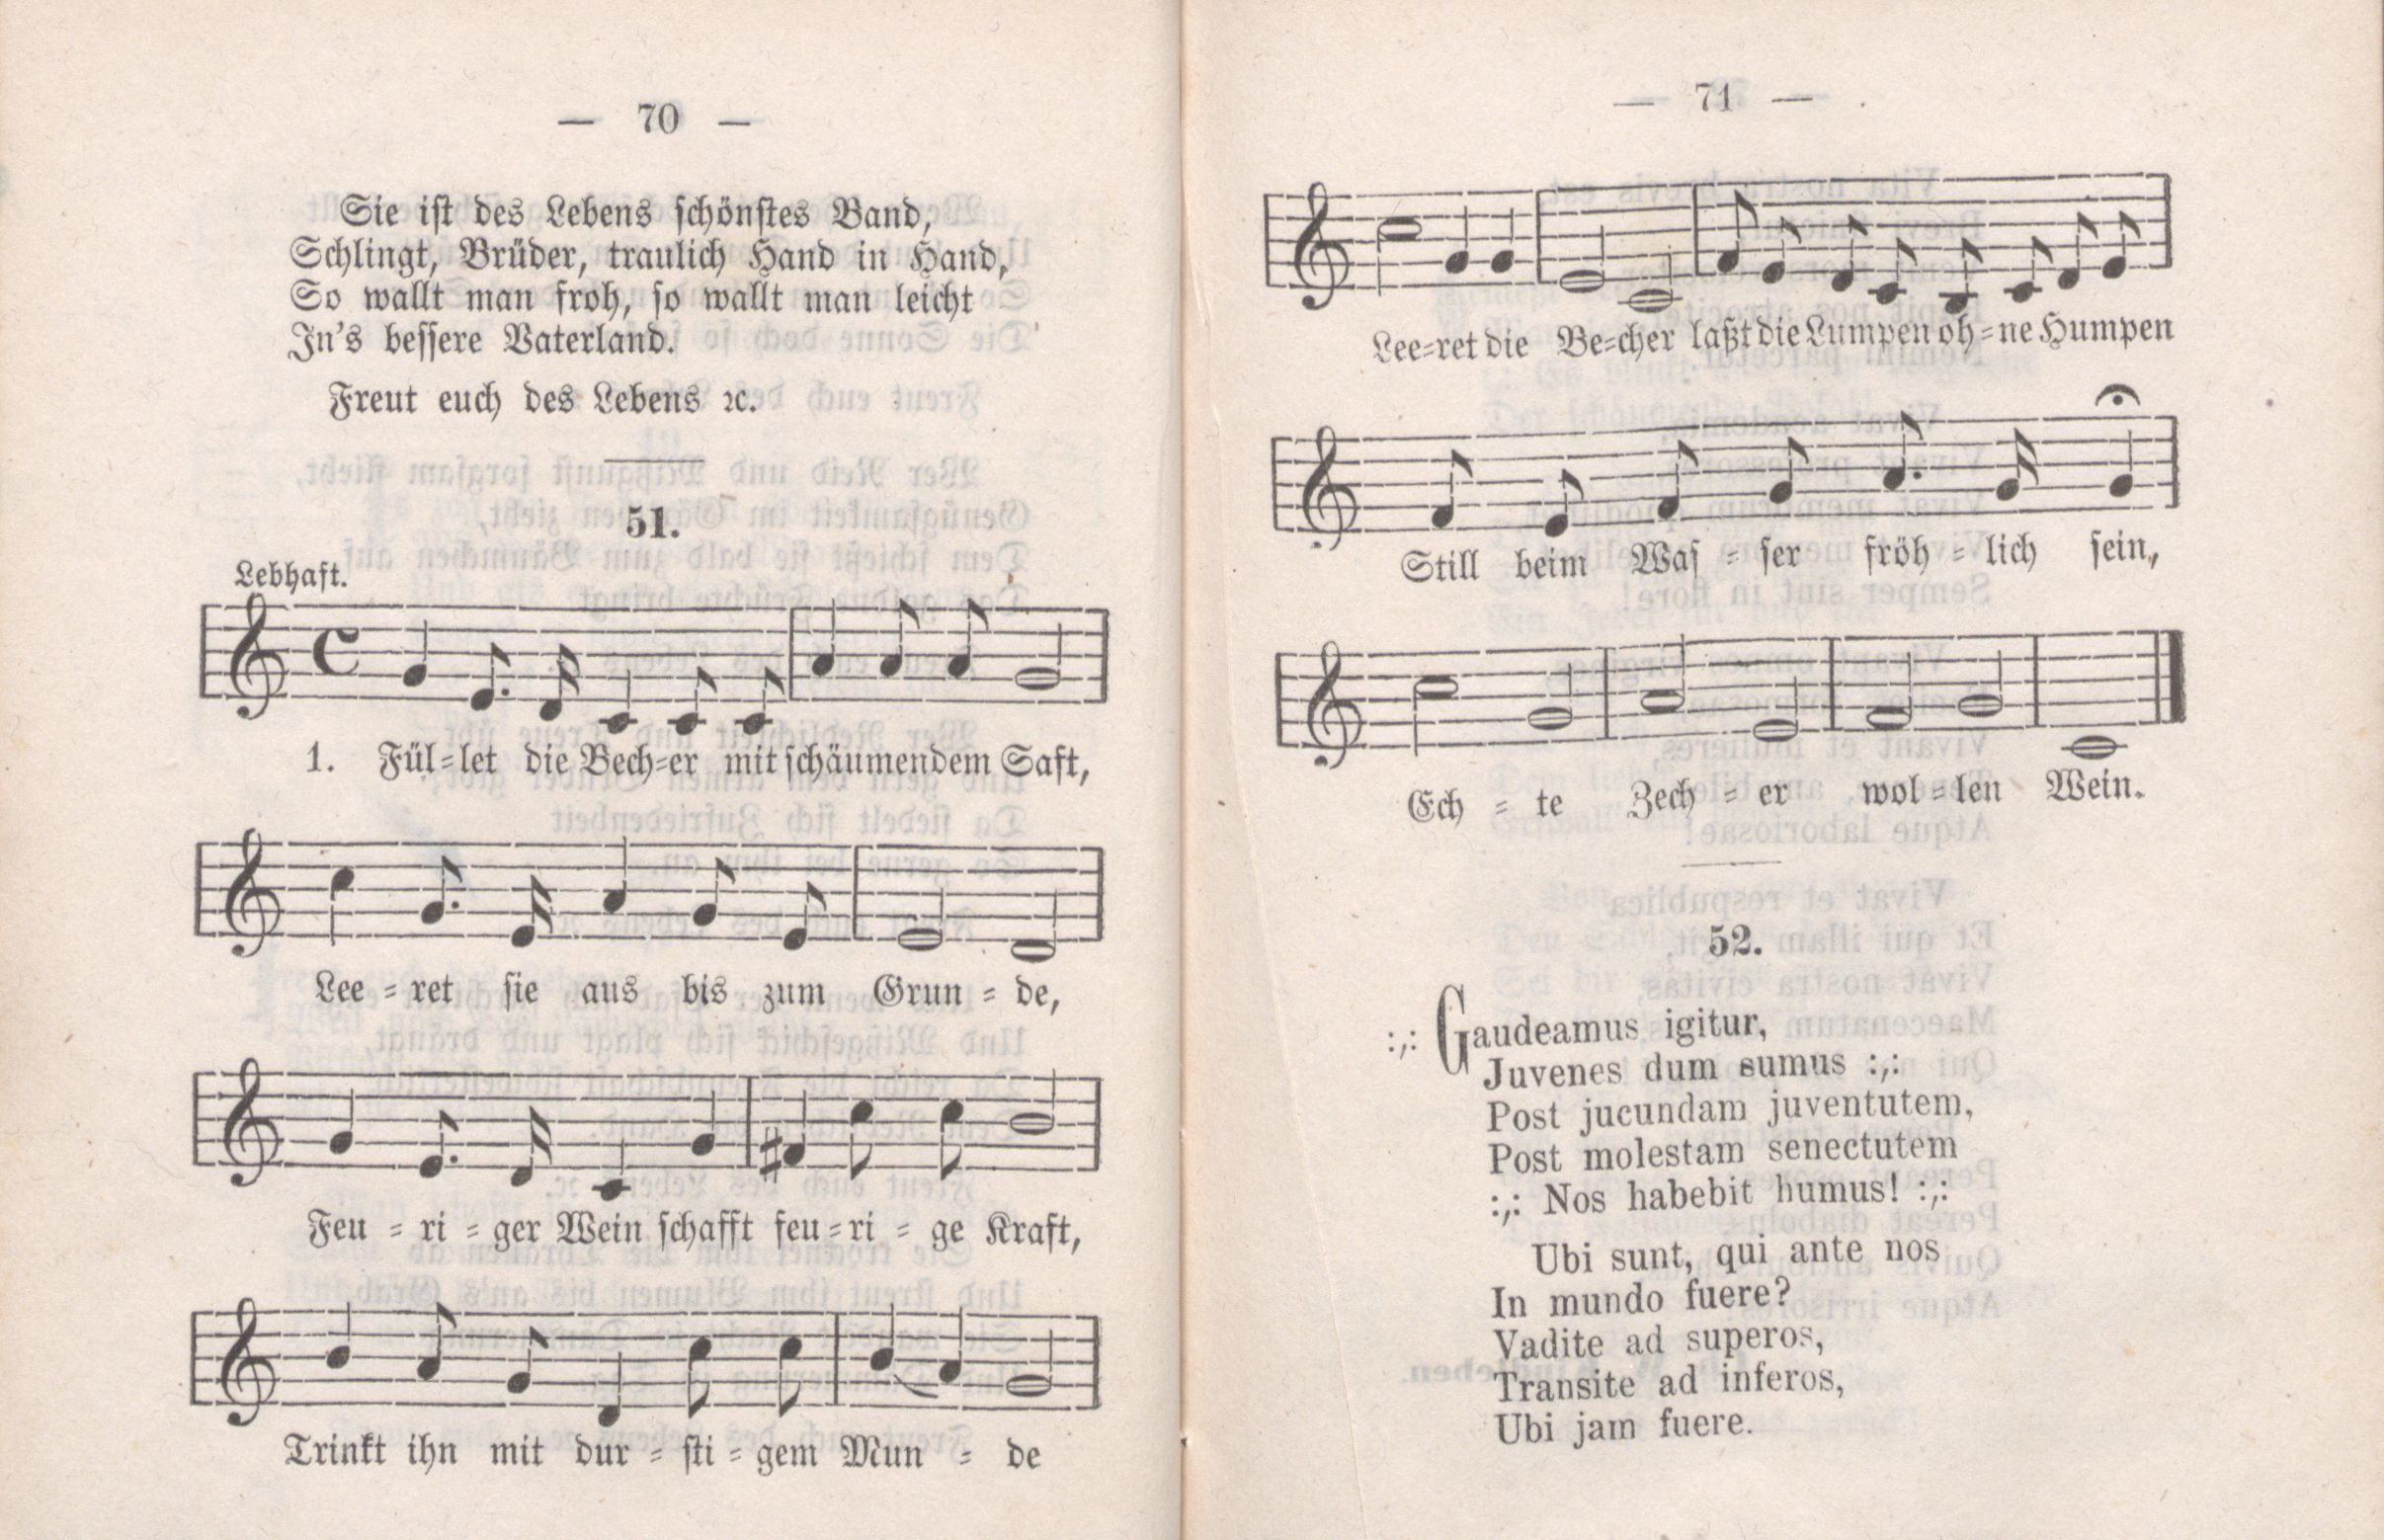 Dorpater Burschenliederbuch (1882) | 41. (70-71) Main body of text